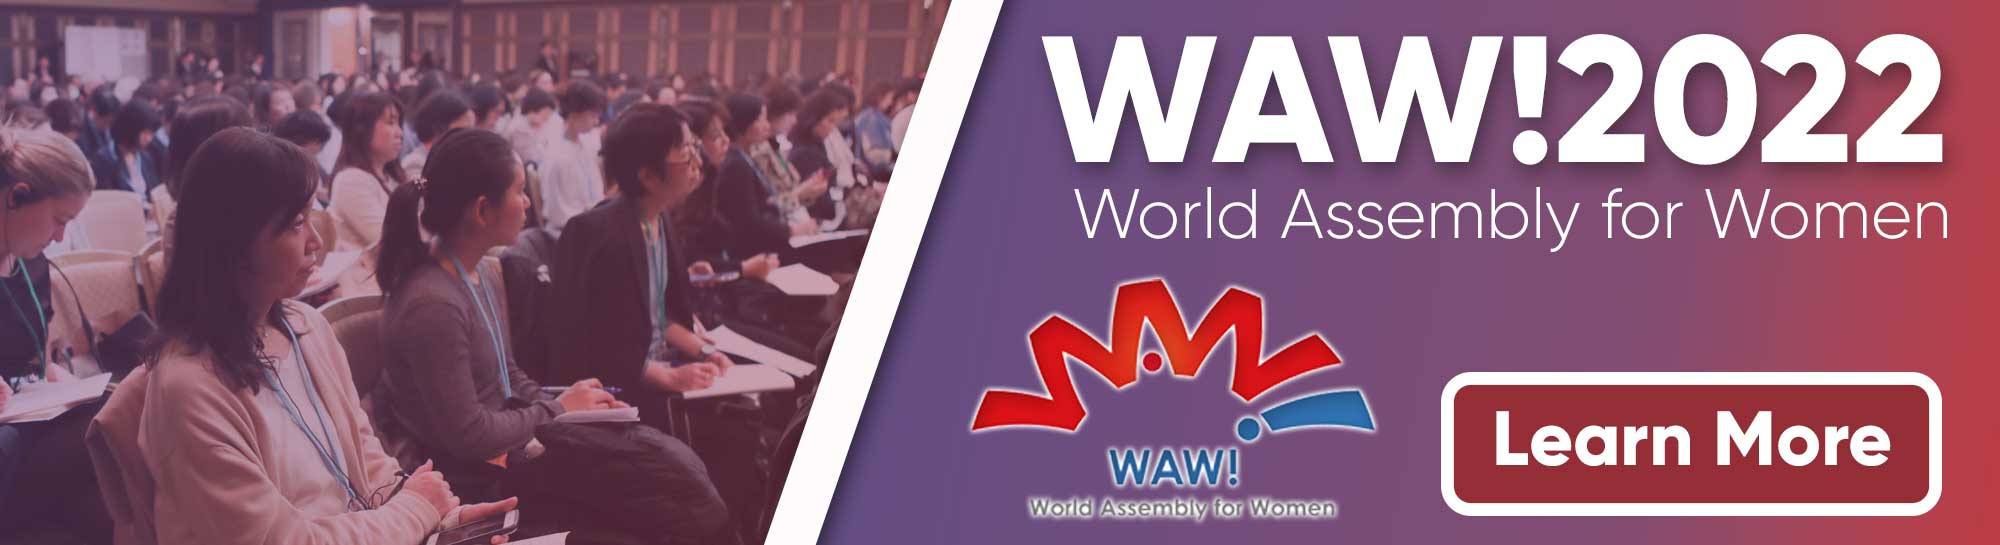 WAW!2022 : le Japon organise une Assemblée mondiale pour les femmes après une interruption de trois ans